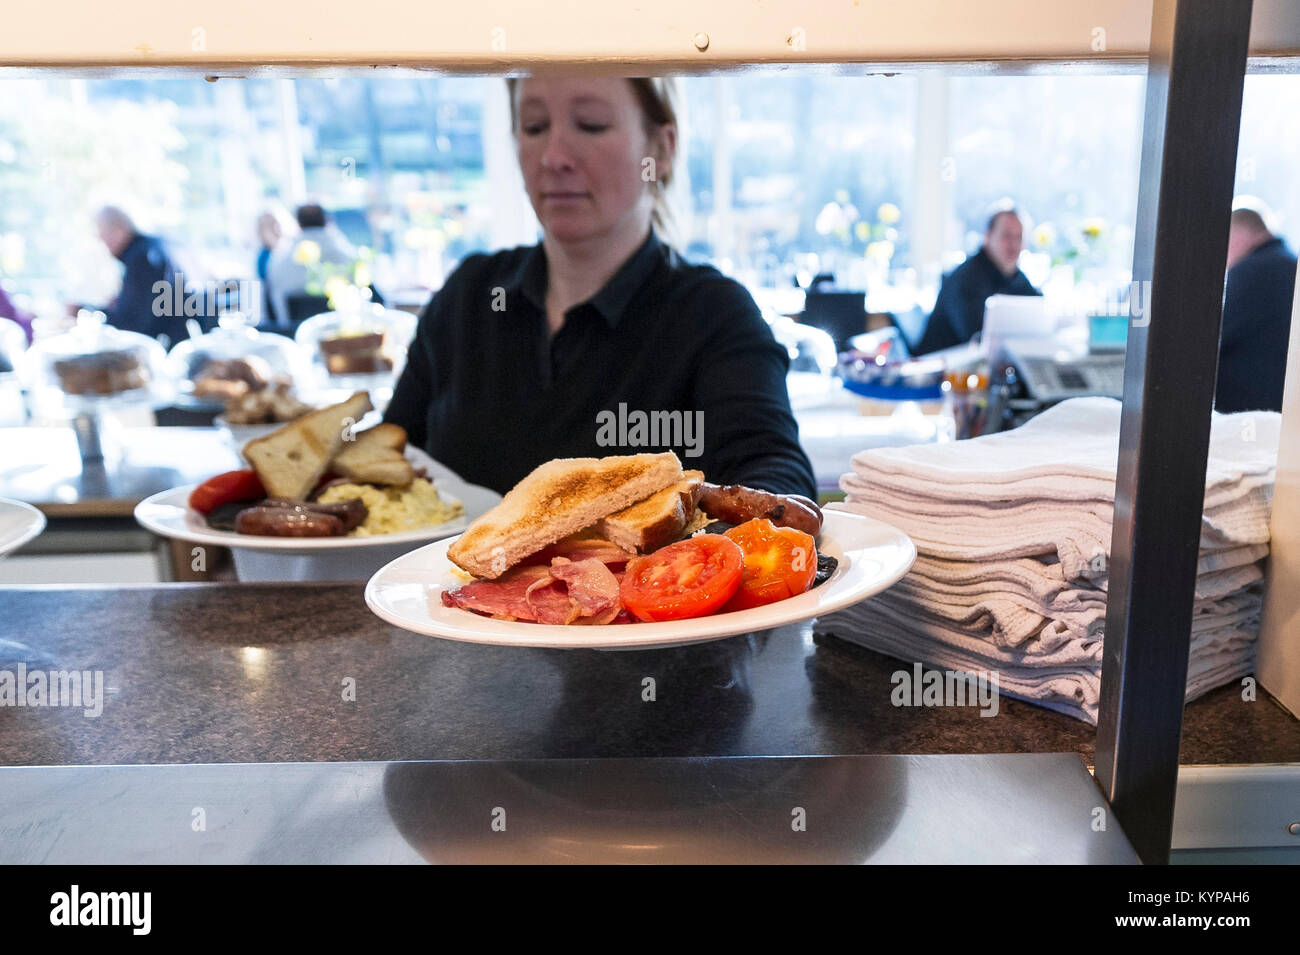 La preparación de los alimentos - dos desayuno inglés completo recogida en el pase en un restaurante Foto de stock